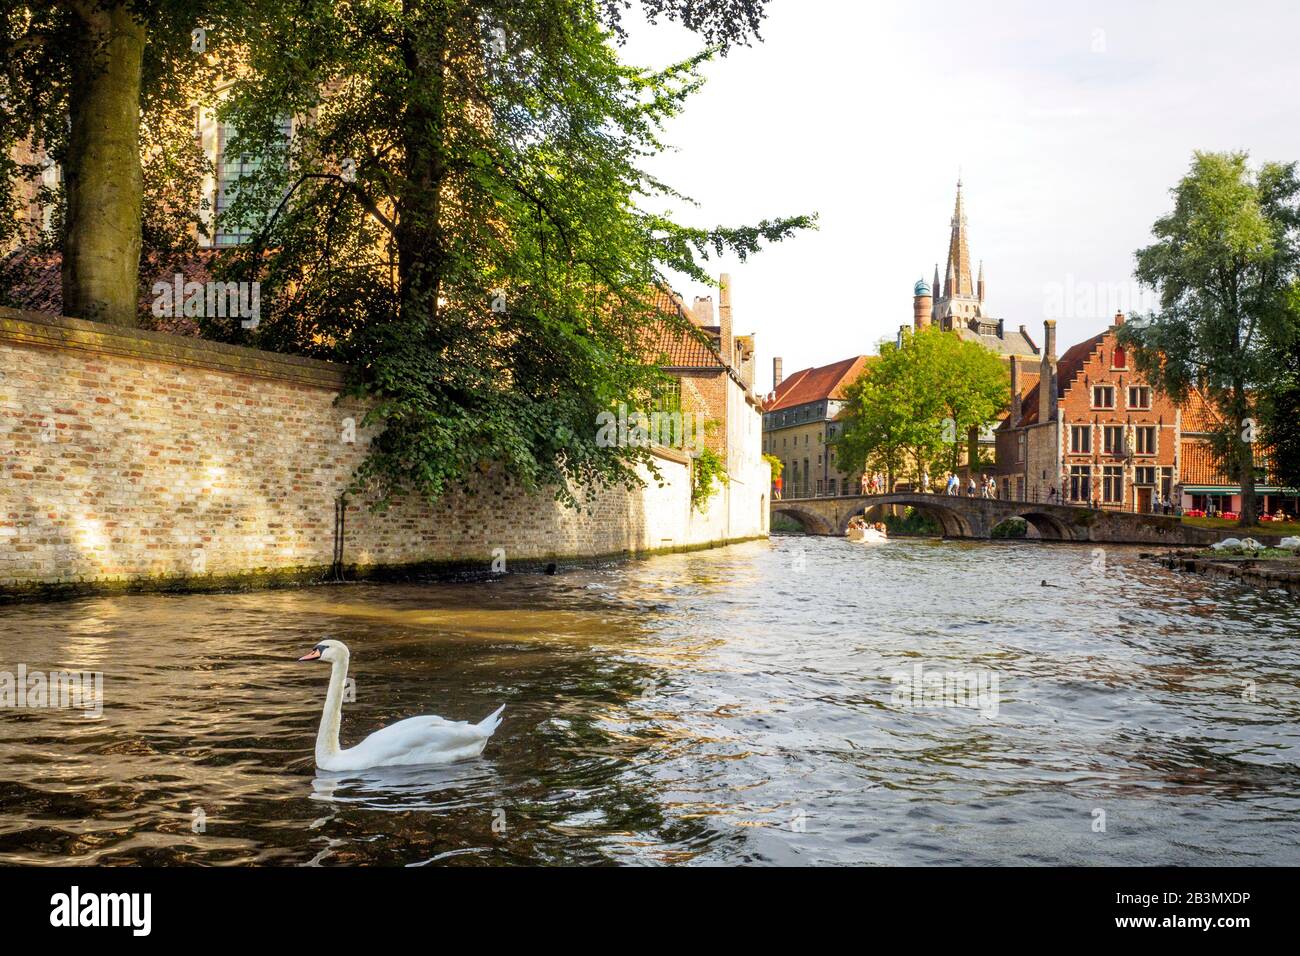 Un cygne dans un canal de Bruges et l'église Notre-Dame (Onze-Lieve-Vrouwekerk) en arrière-plan - Bruges, Belgique Banque D'Images